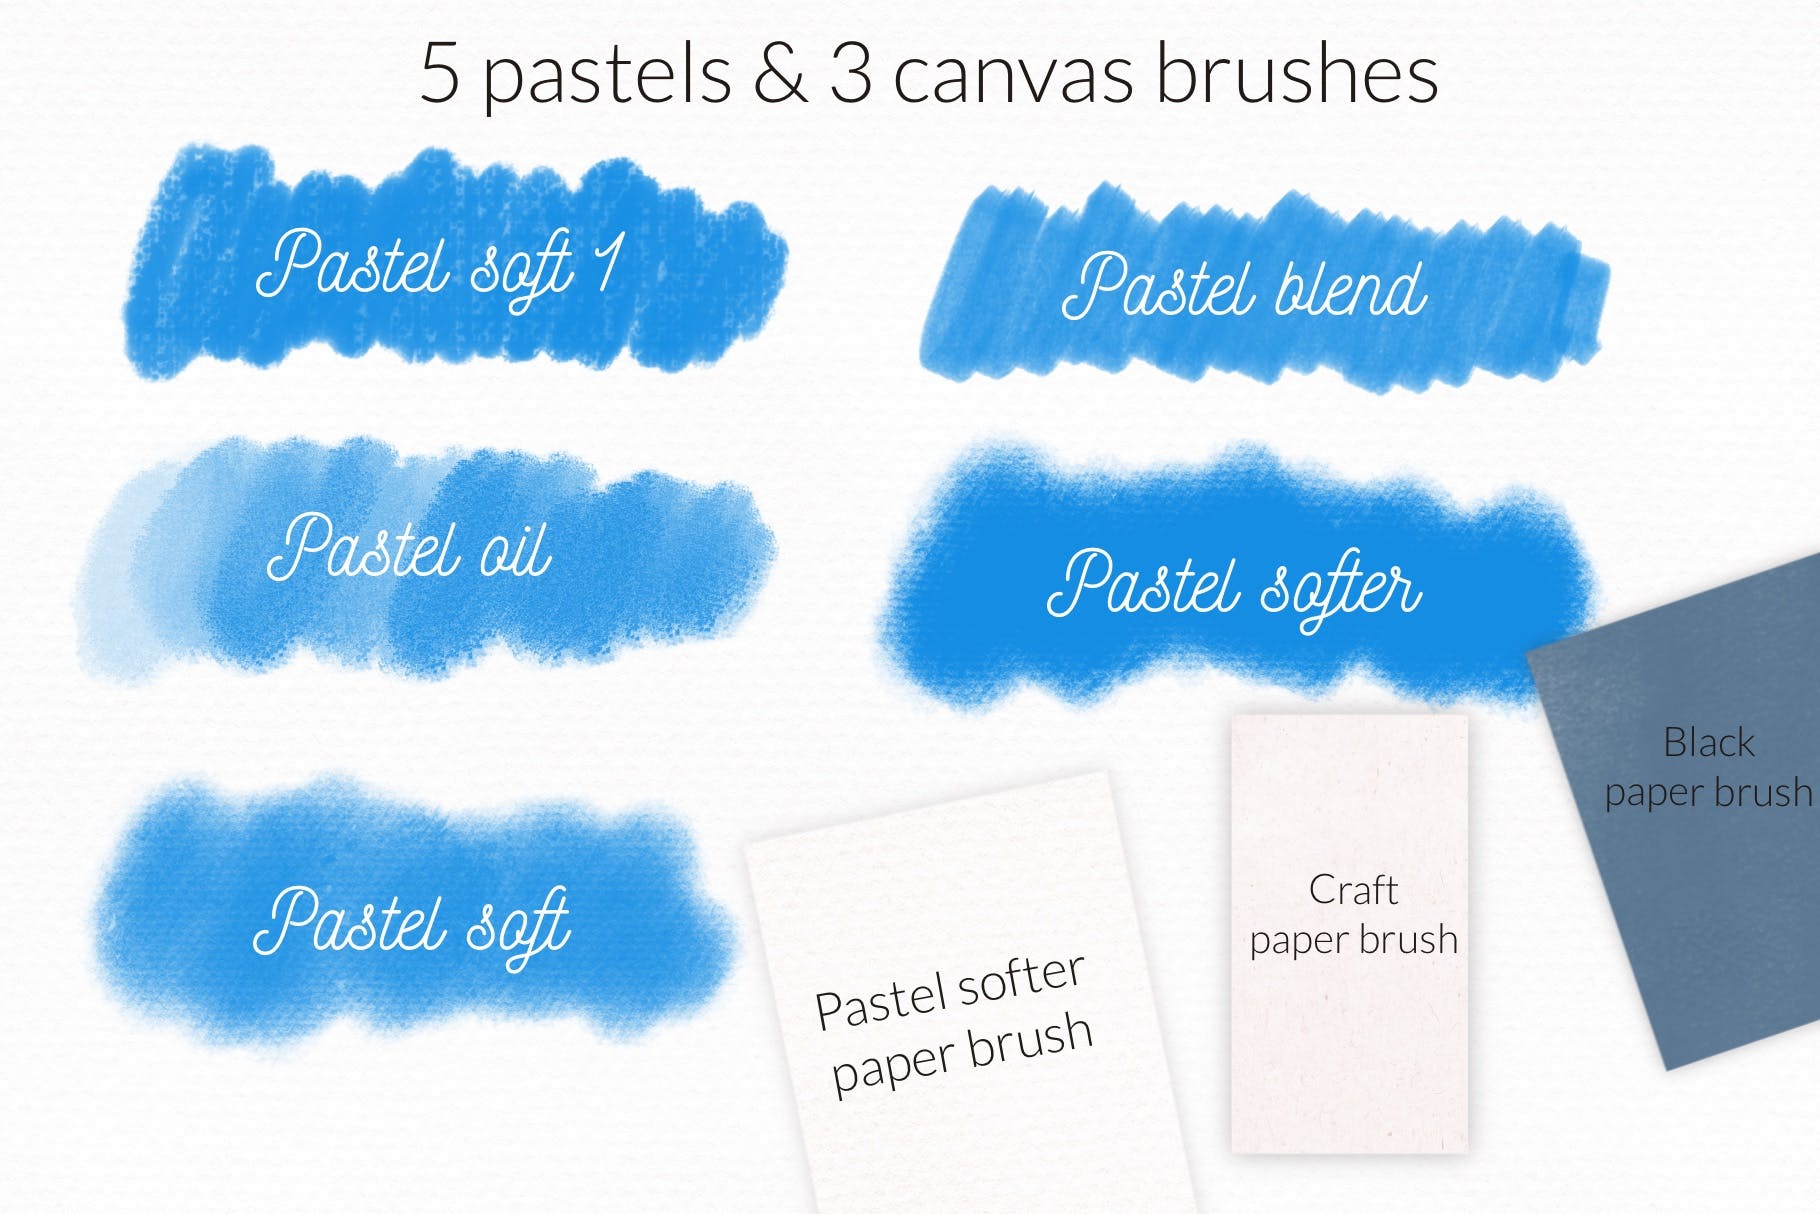 适用于iPad Procreate的蜡笔纹理笔刷 Pastels brushes for Procreate iPad 笔刷资源 第3张